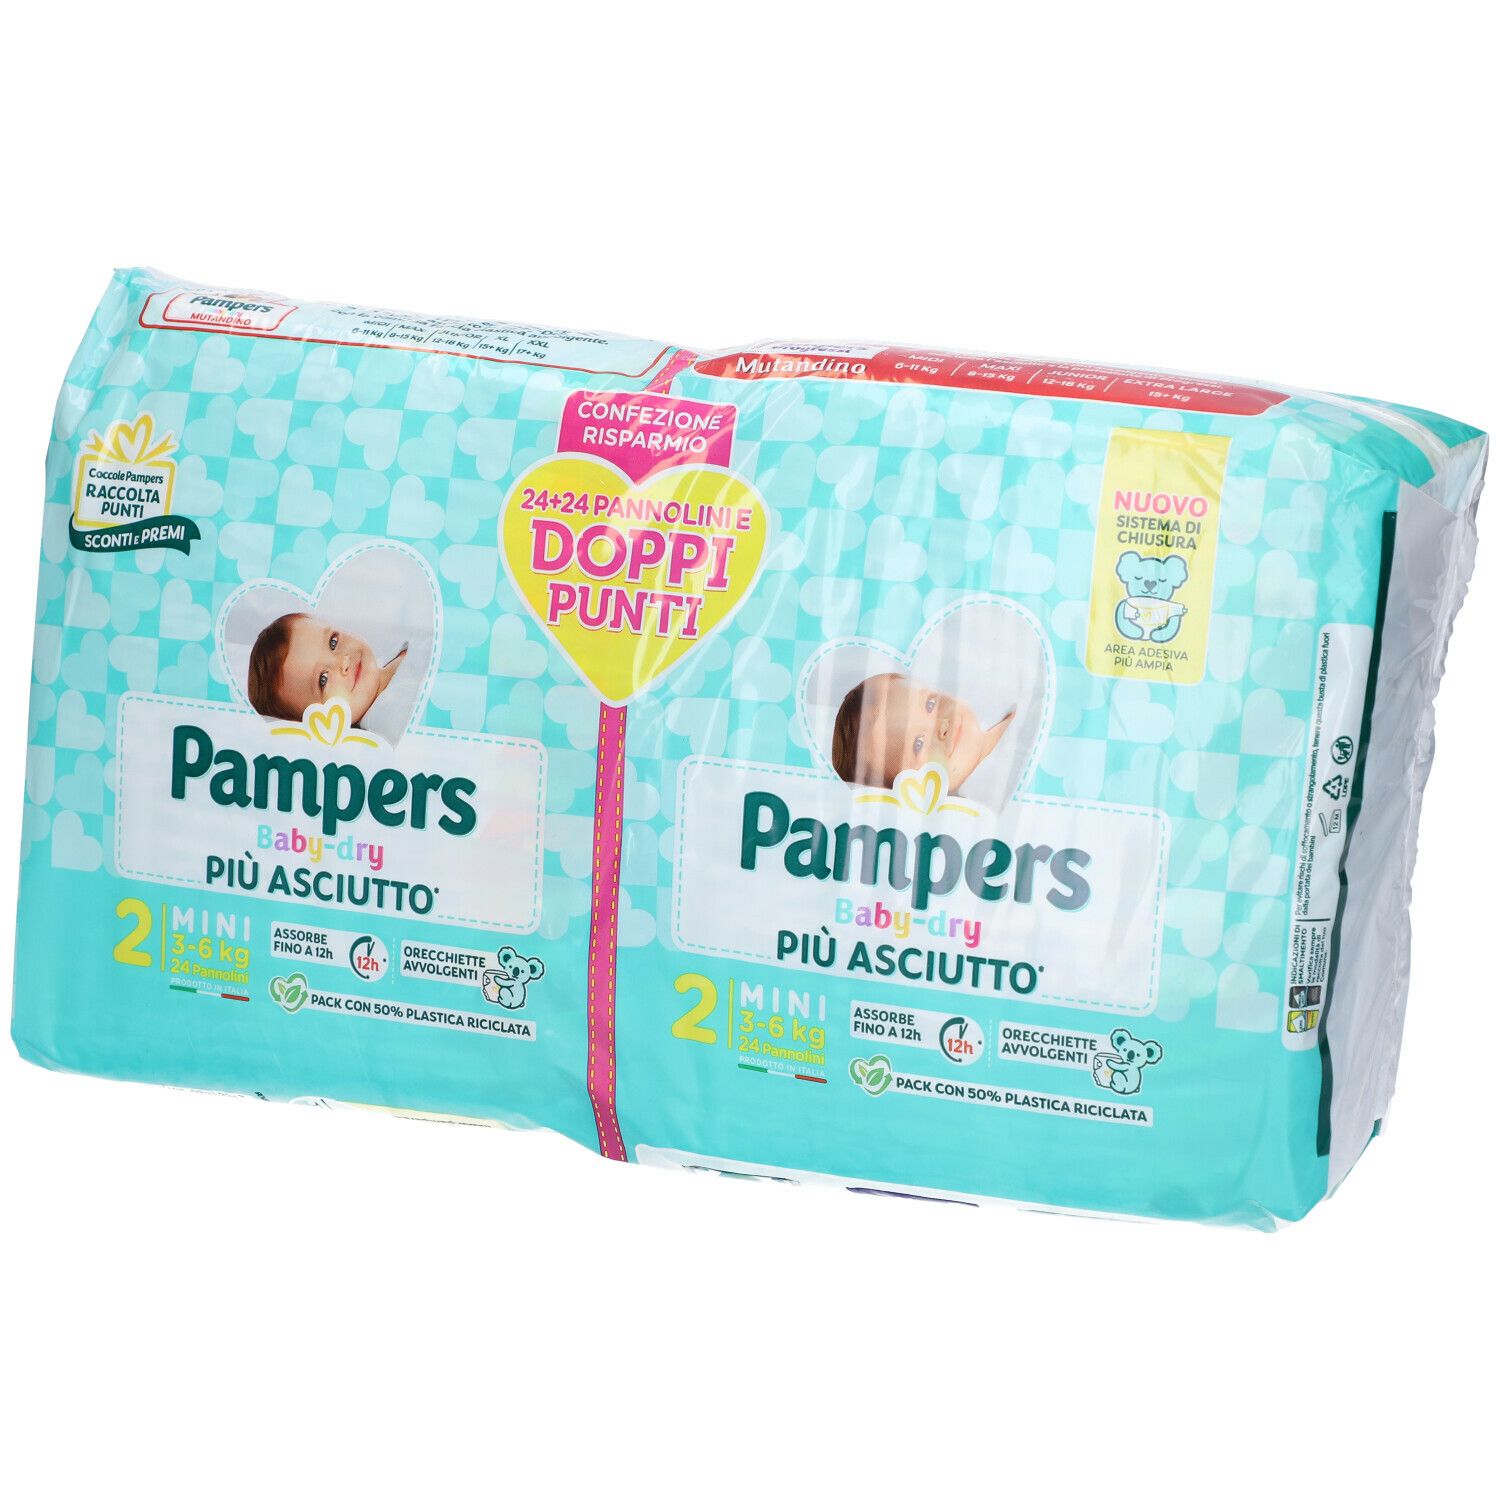 Pannolini Pampers Baby Dry Maxi Pacco Scorta da 156 Pannolini Taglia 4